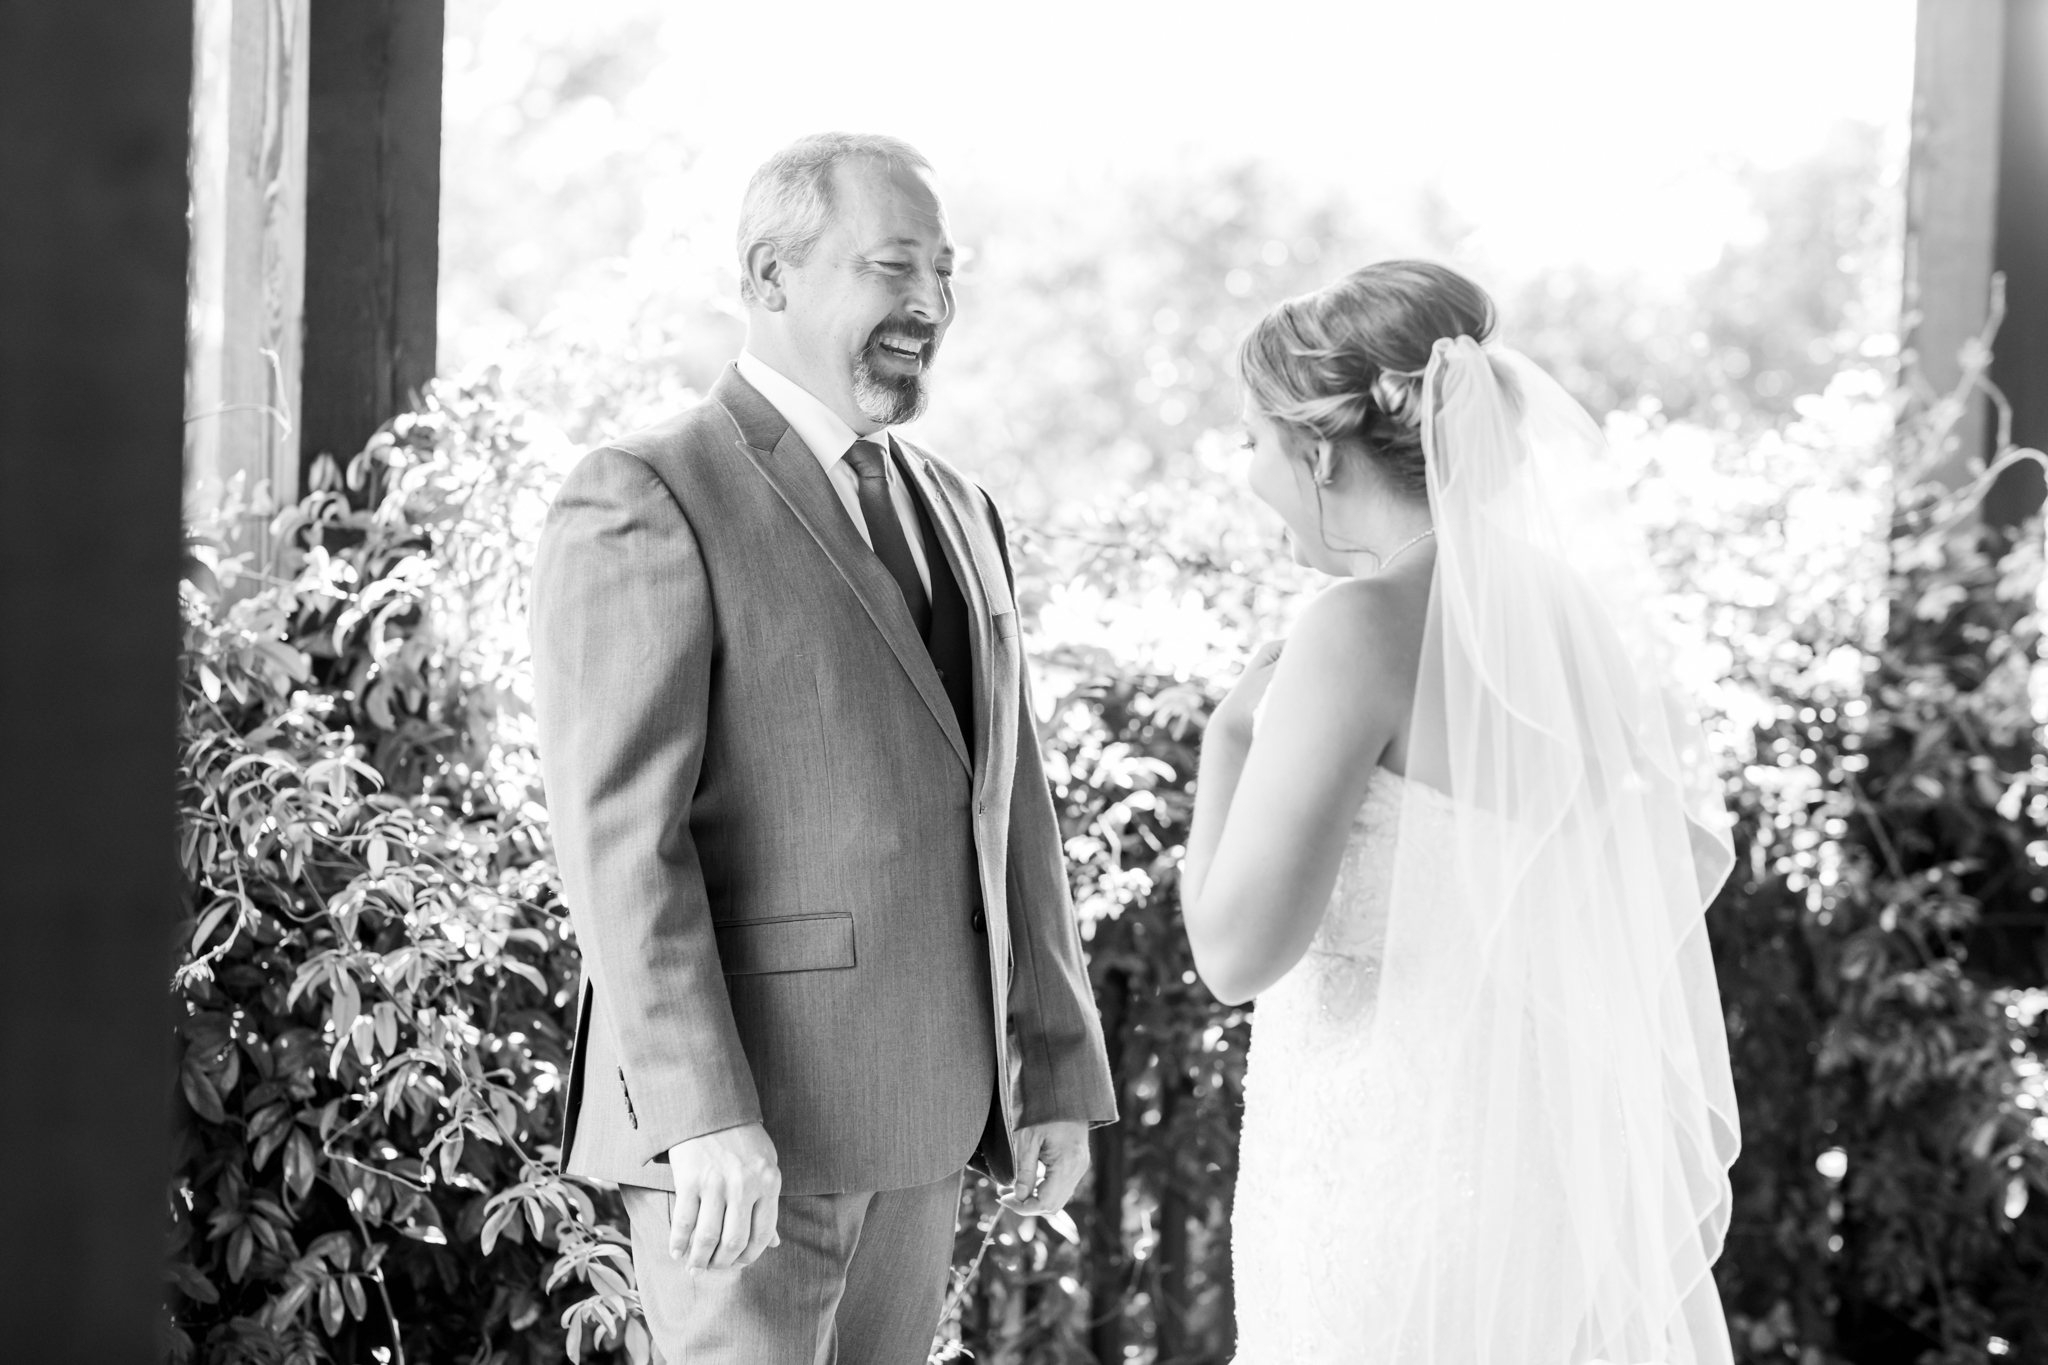 A Sunflower Filled Wedding at Carleen Bright Arboretum in Waco, TX by Dawn Elizabeth Studios, Texas Wedding Photographer